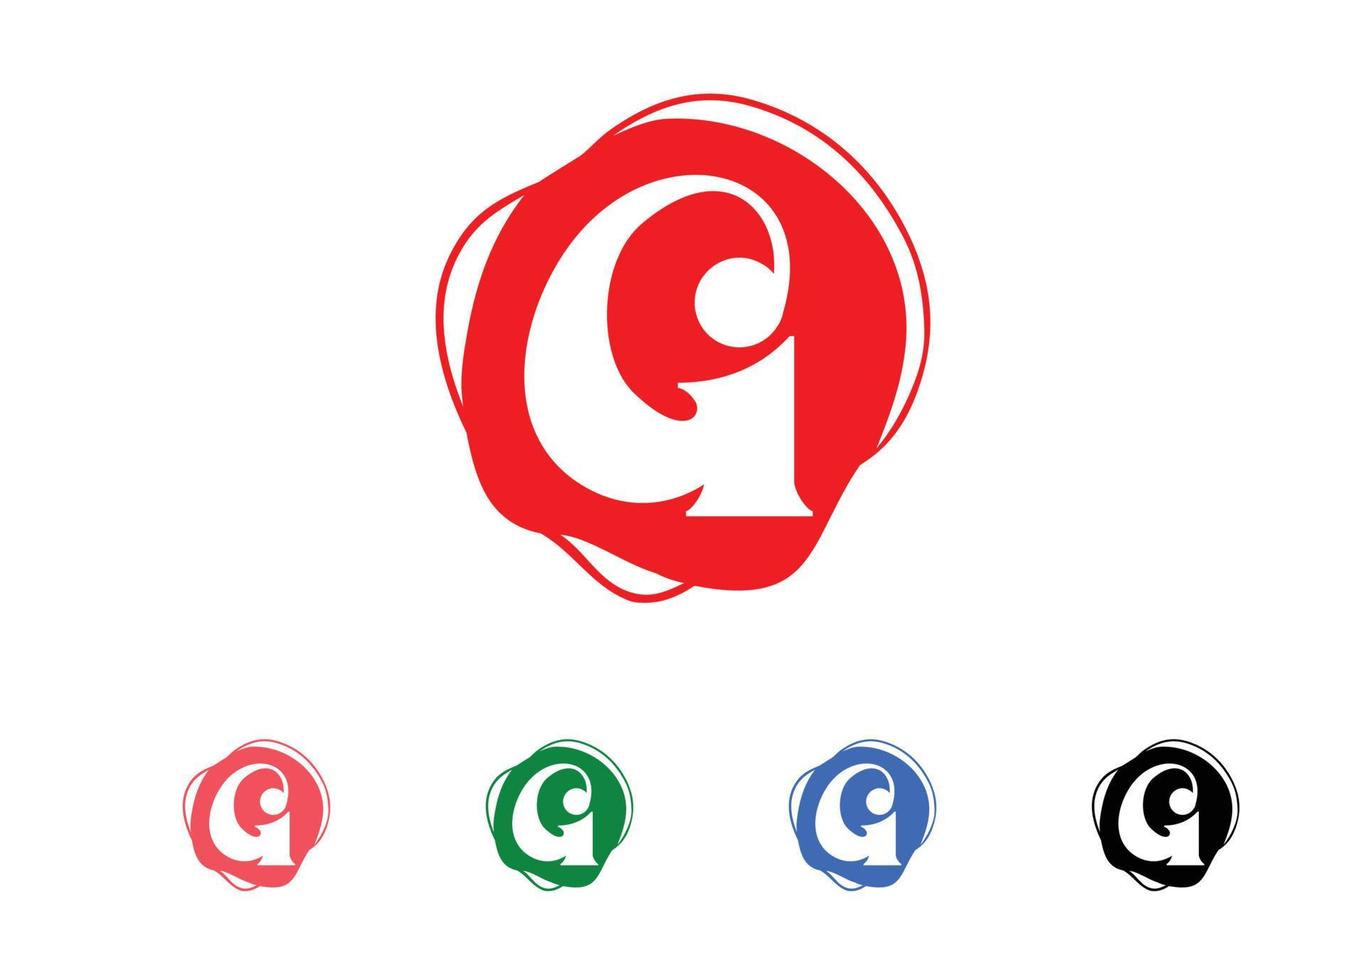 g-Brief-Logo und Symbol-Design-Vorlage vektor